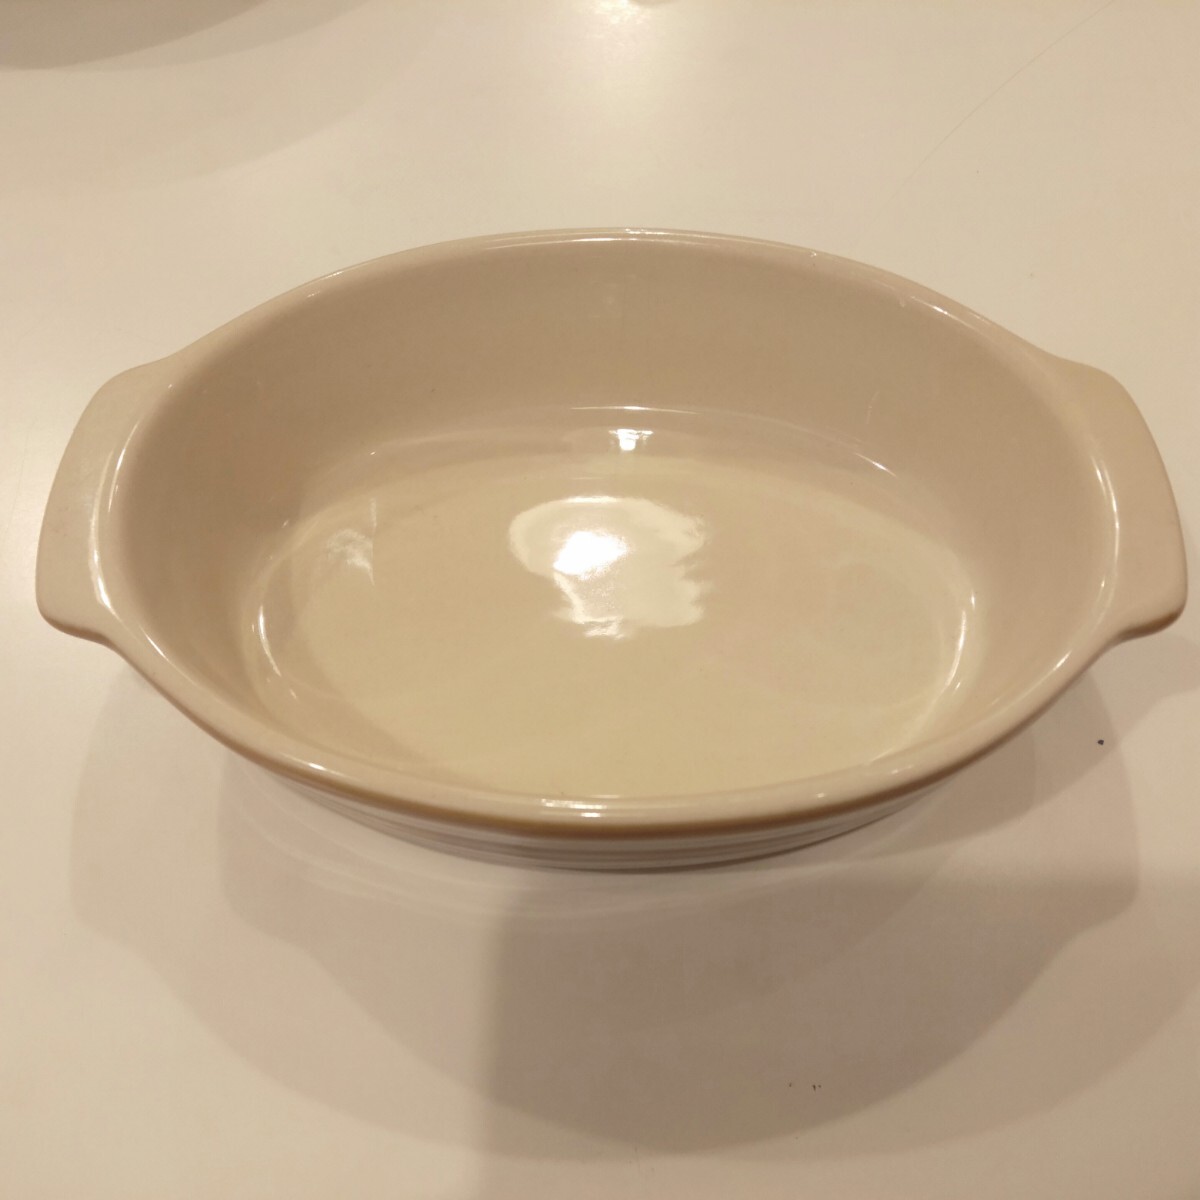 グラタン皿 食器 約15cm ×10cm